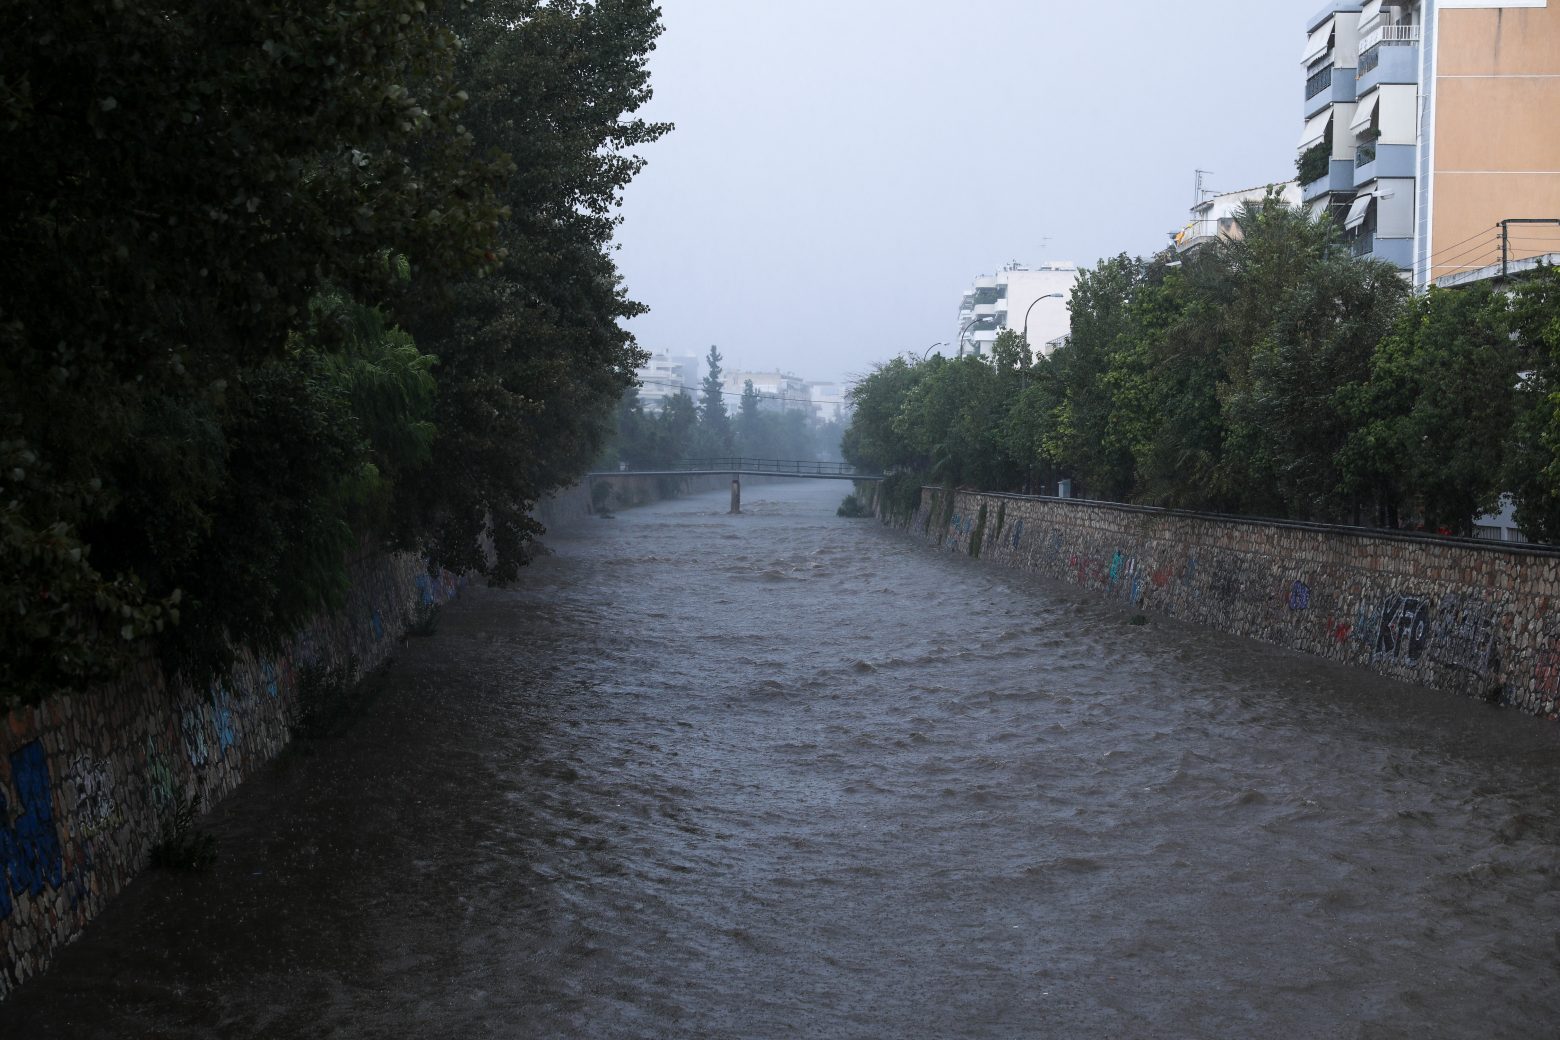 Πλημμύρες - Ενημερωτικό σποτ του υπουργείου Κλιματικής κρίσης με οδηγίες προστασίας